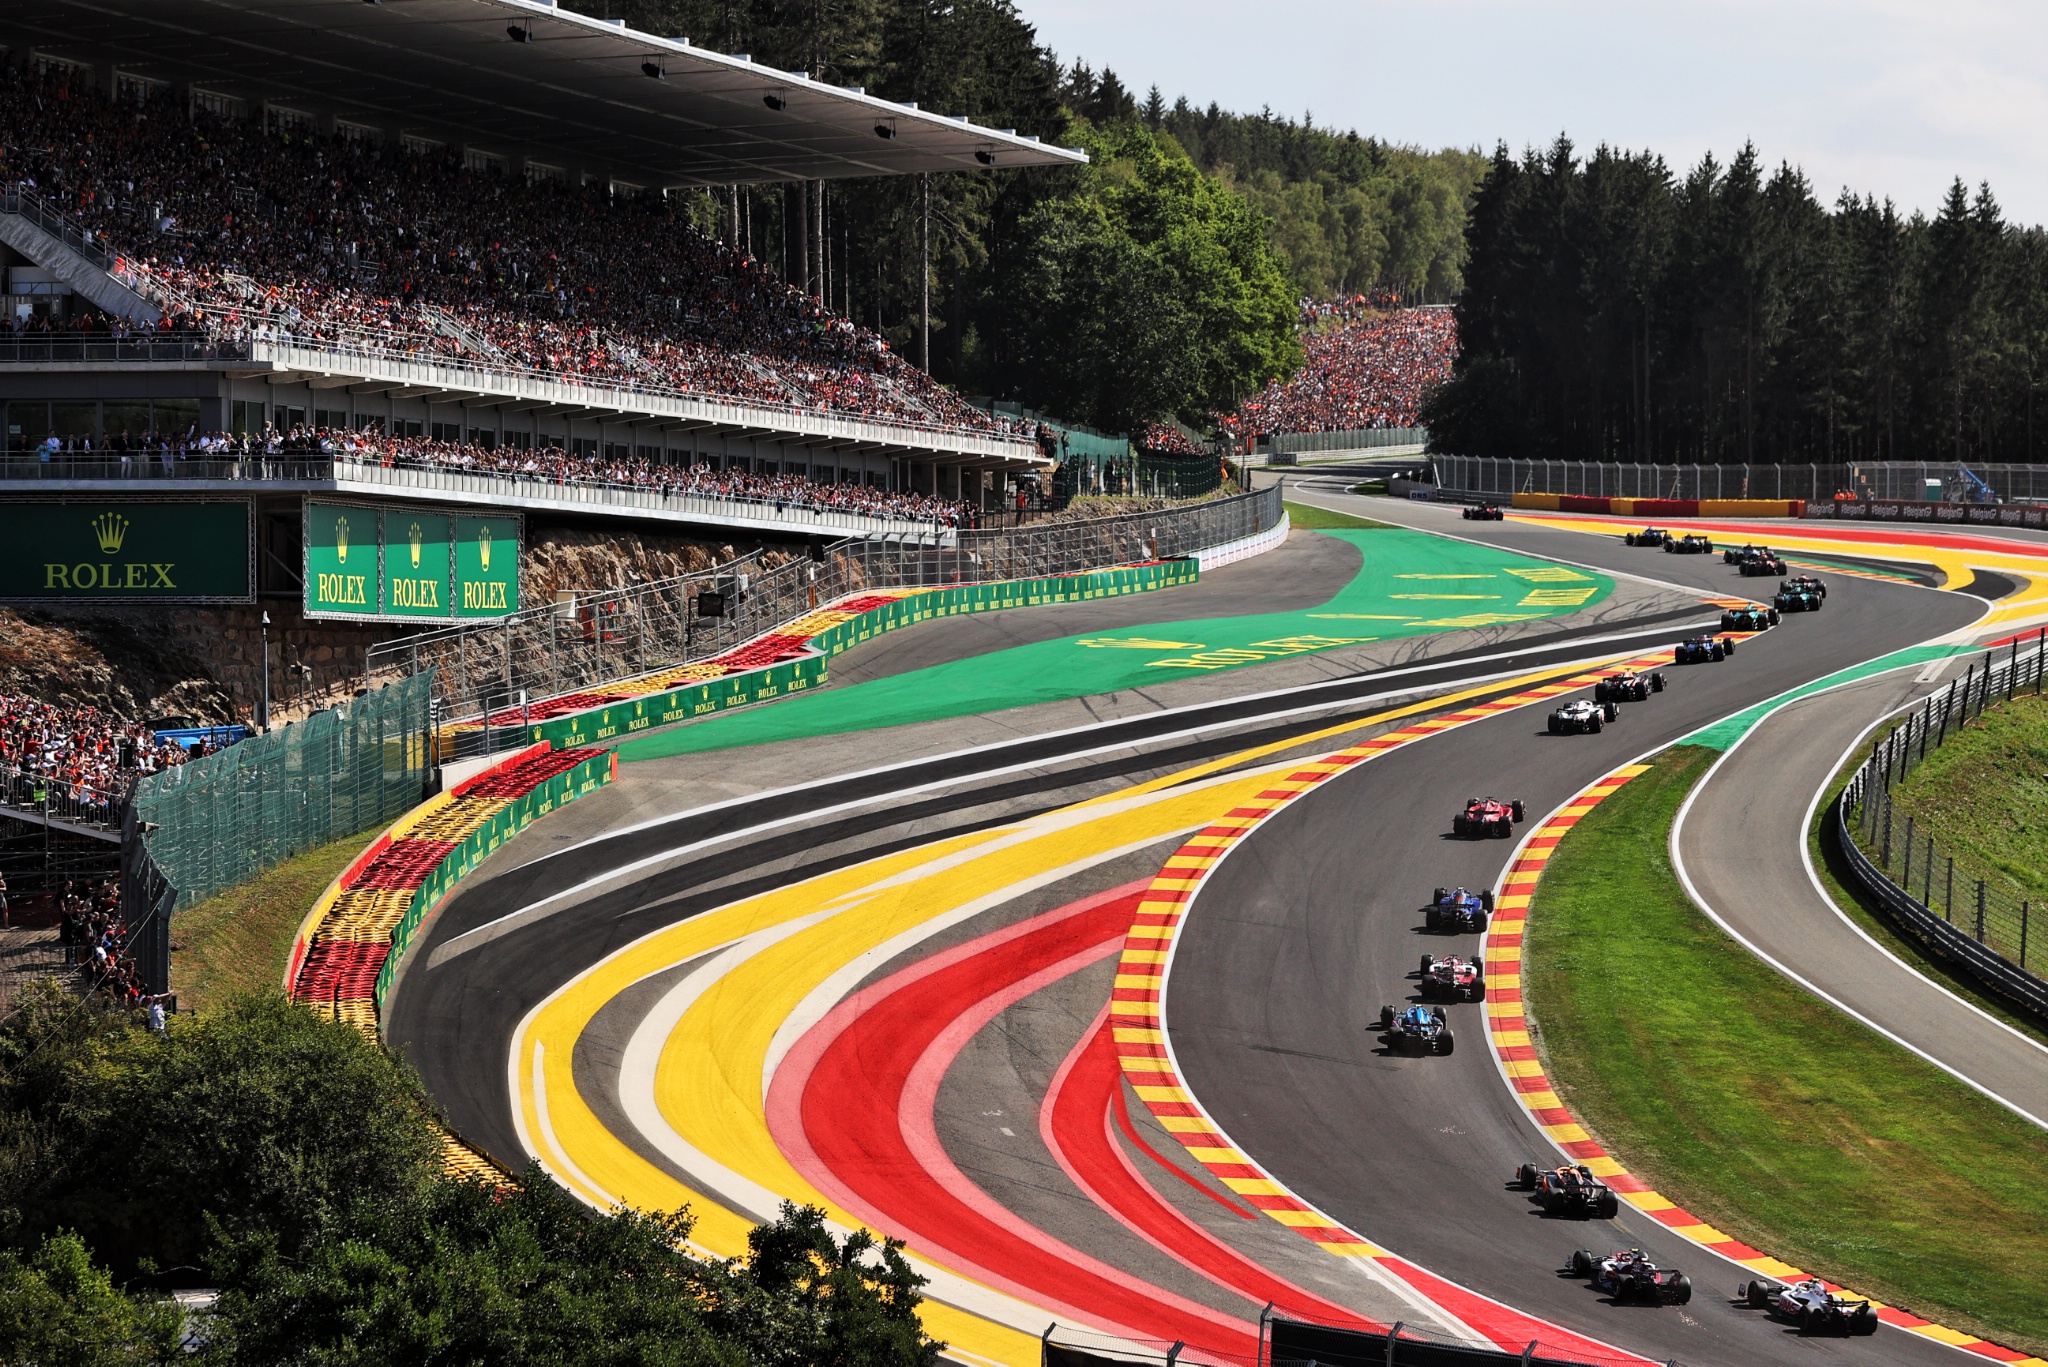 Awal dari balapan. Kejuaraan Dunia Formula 1, Rd 14, Grand Prix Belgia, Spa Francorchamps, Belgia, Race Day.-